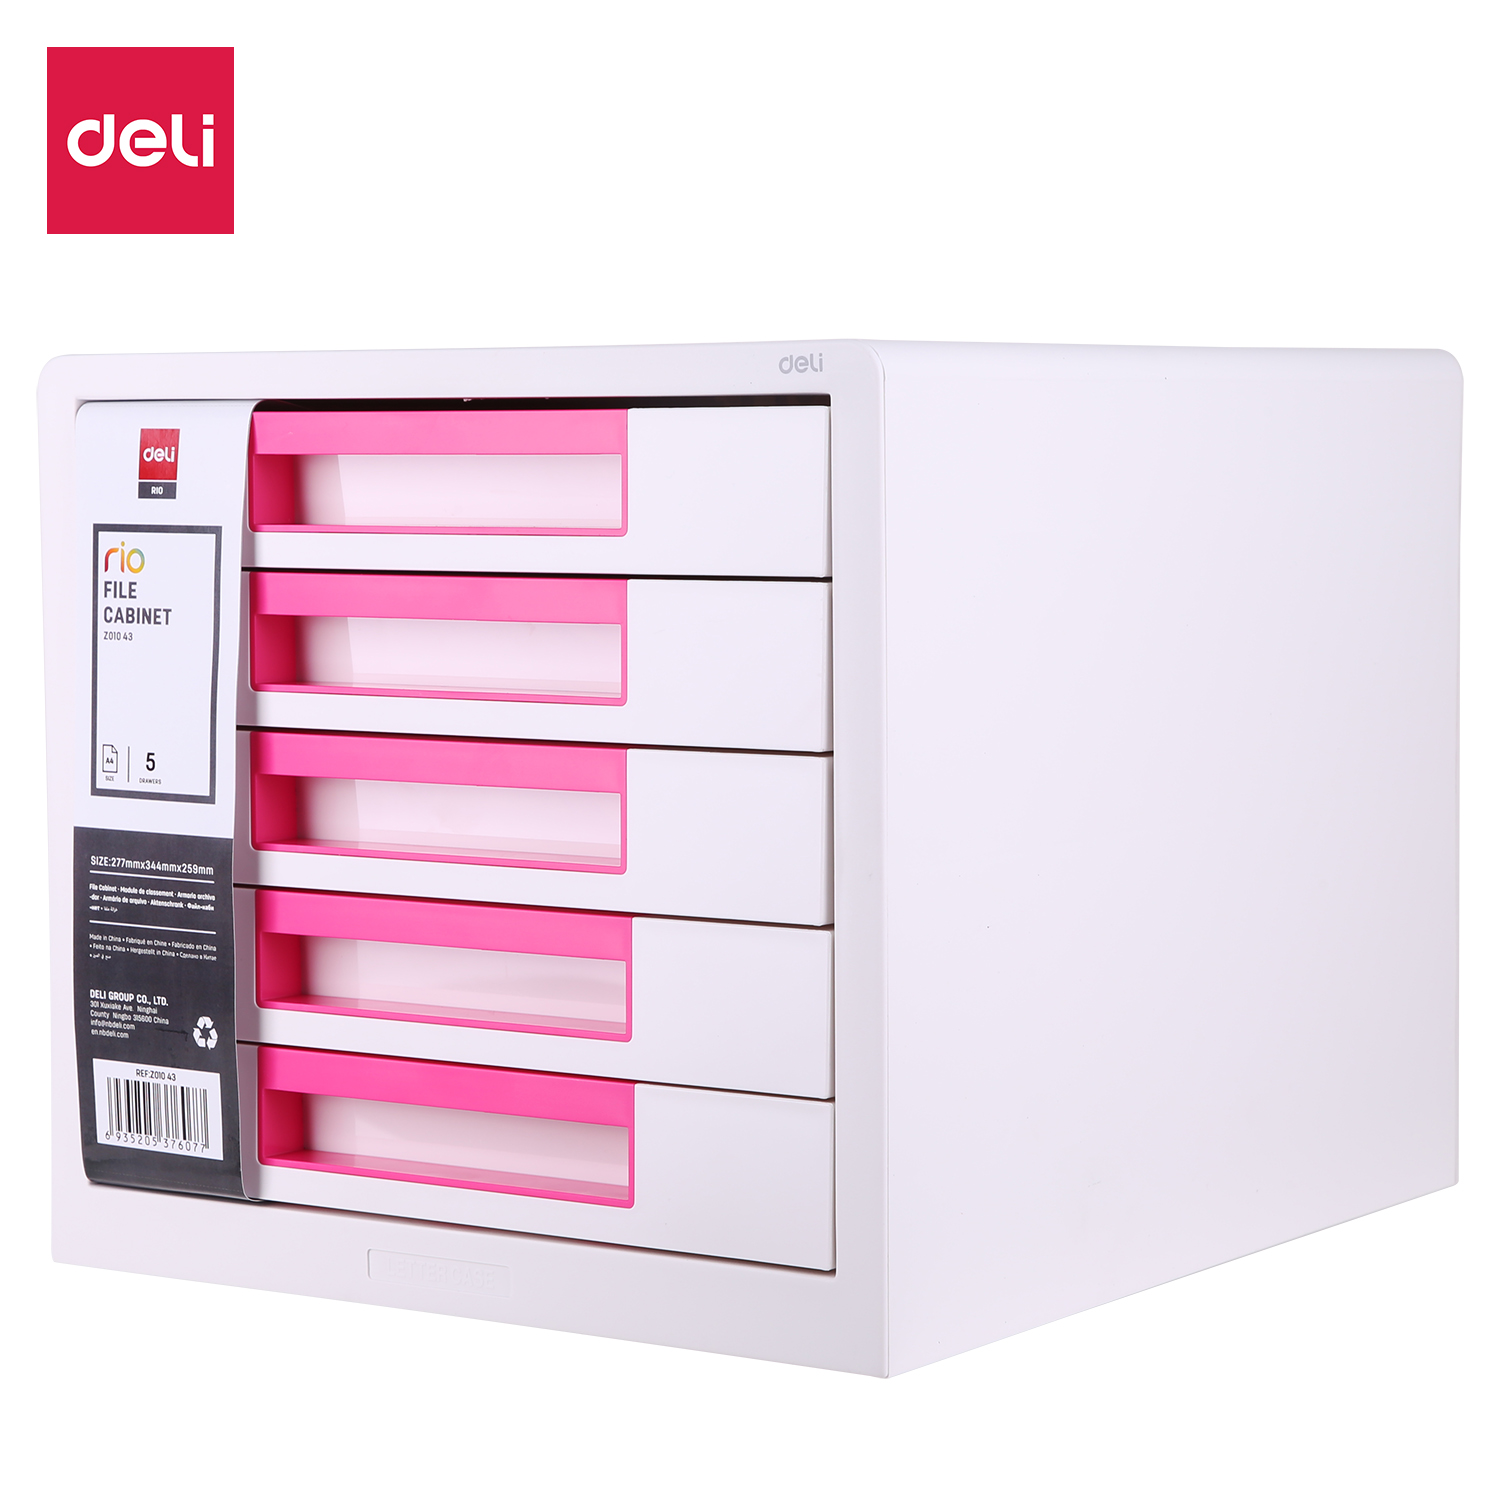 Deli-EZ01043 File Cabinet